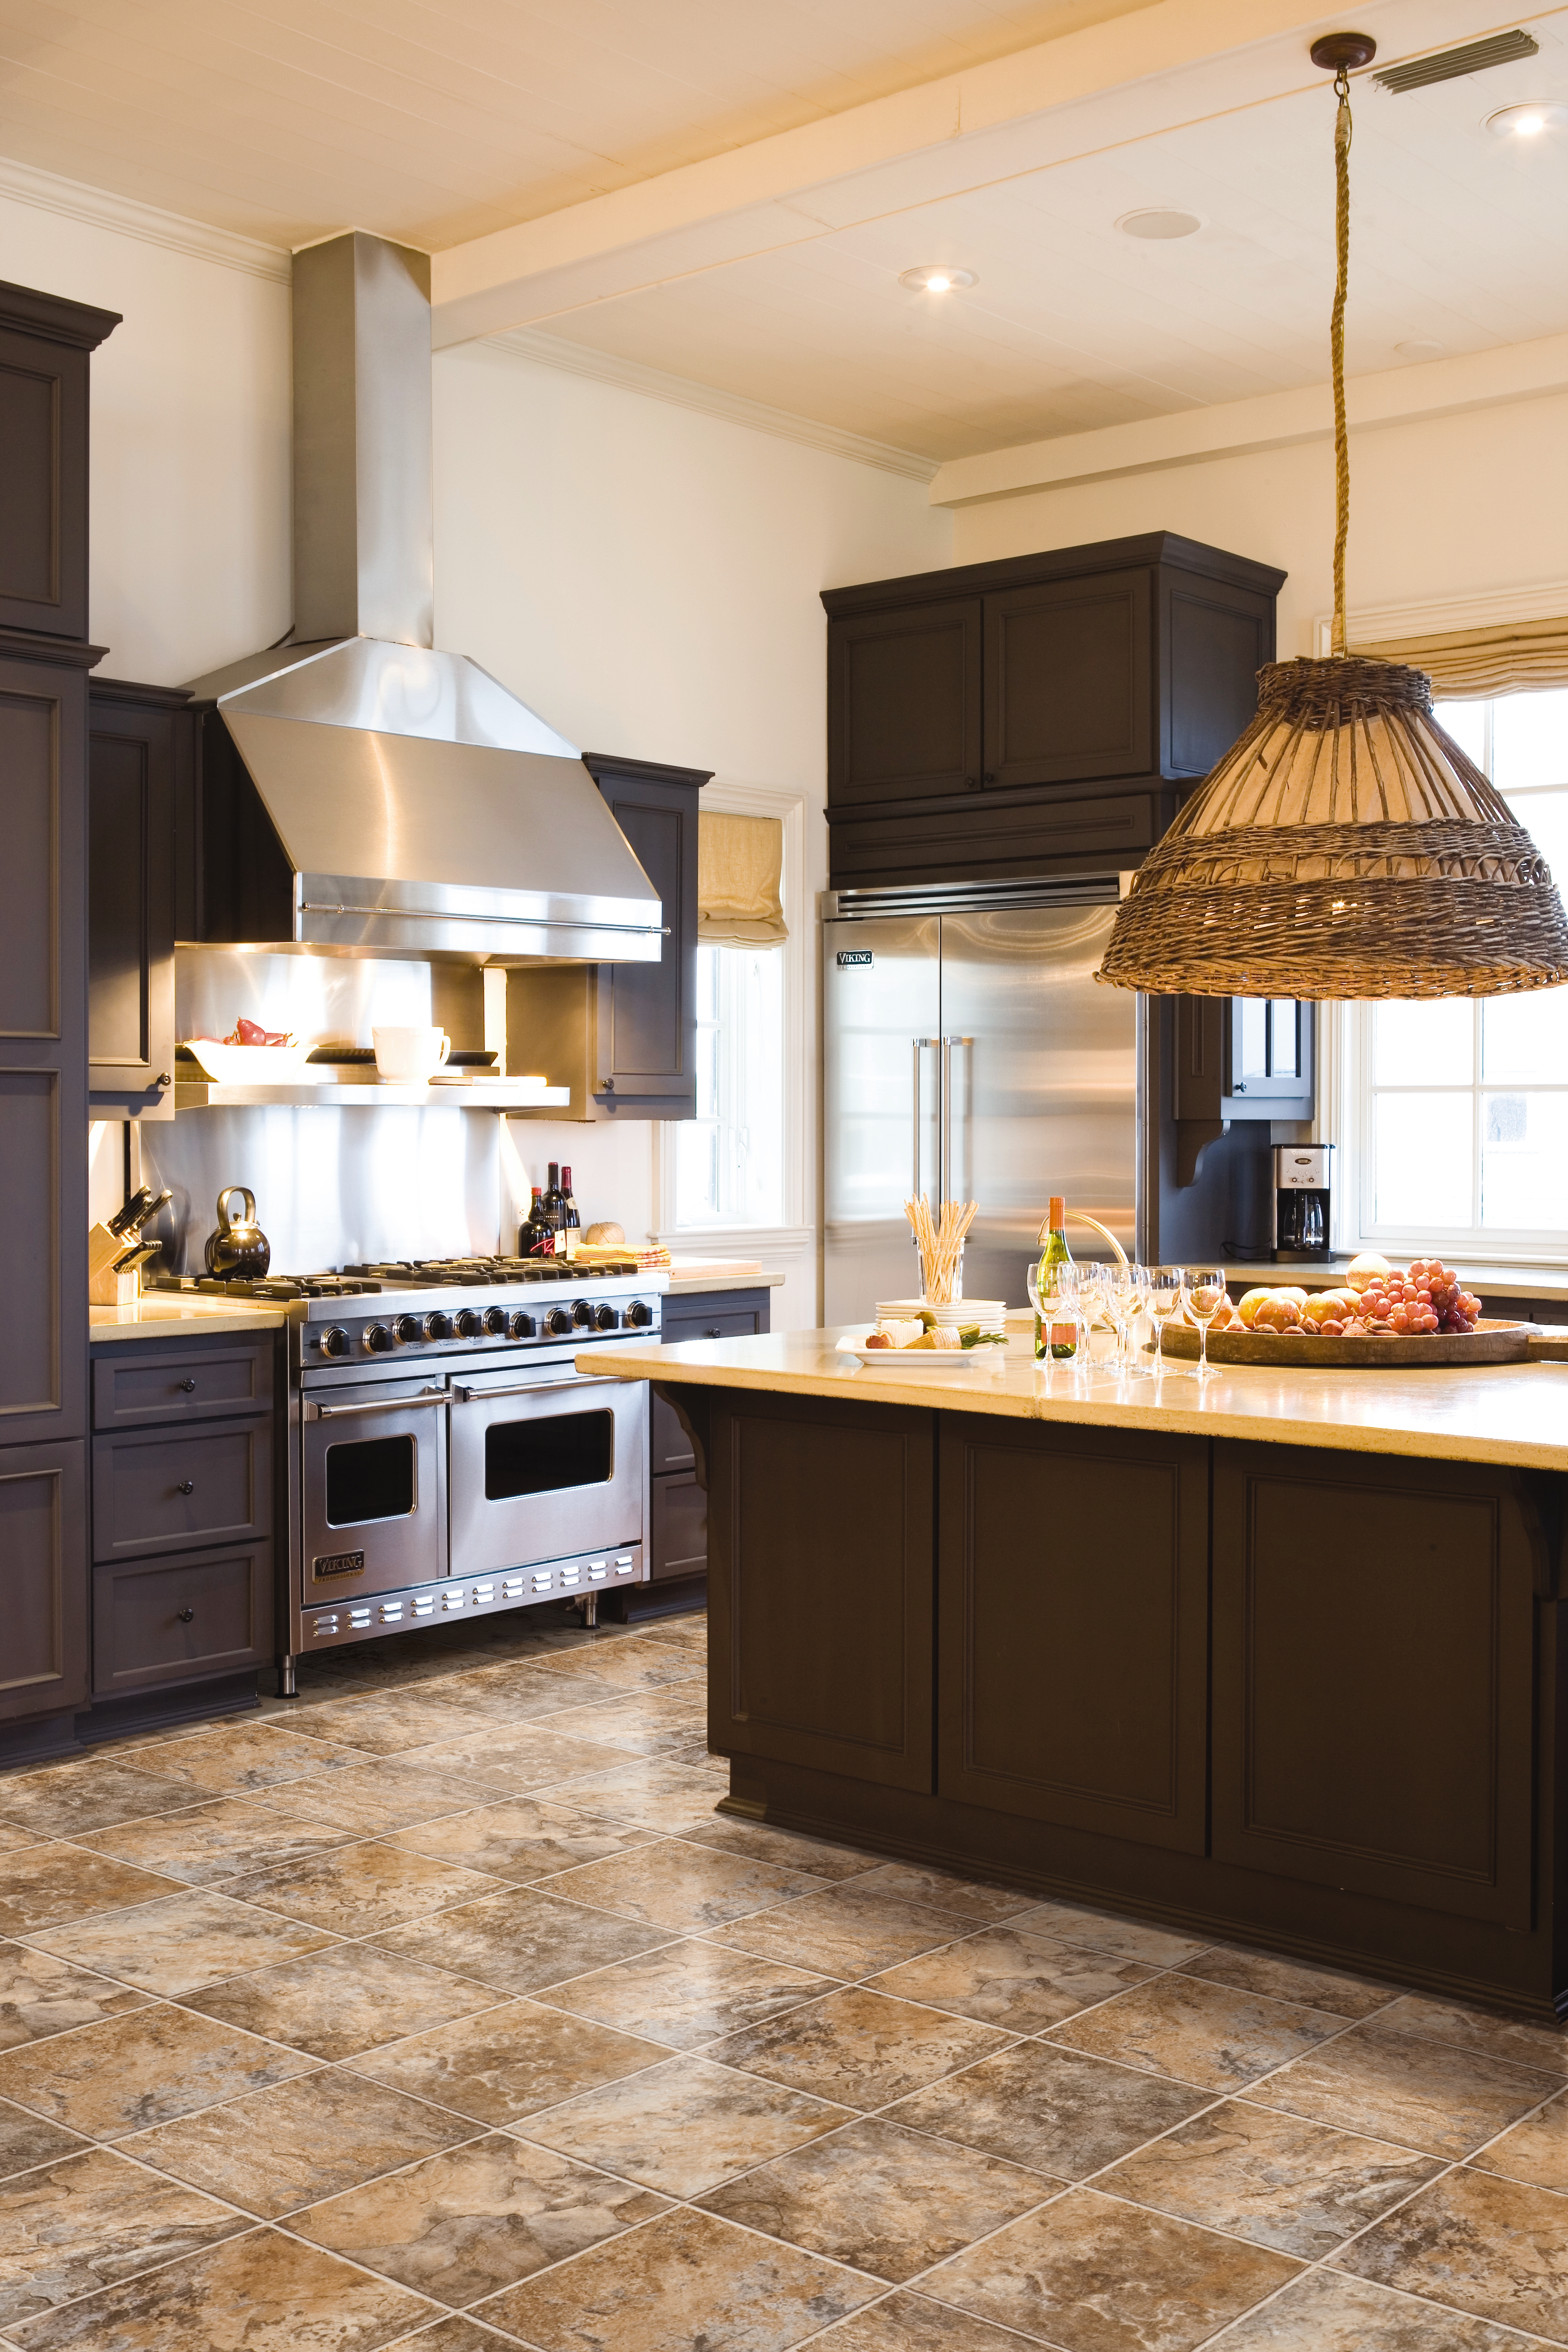 Kitchen Flooring Showdown: Linoleum vs. Luxury Vinyl Tile Flooring – Which One Wins?